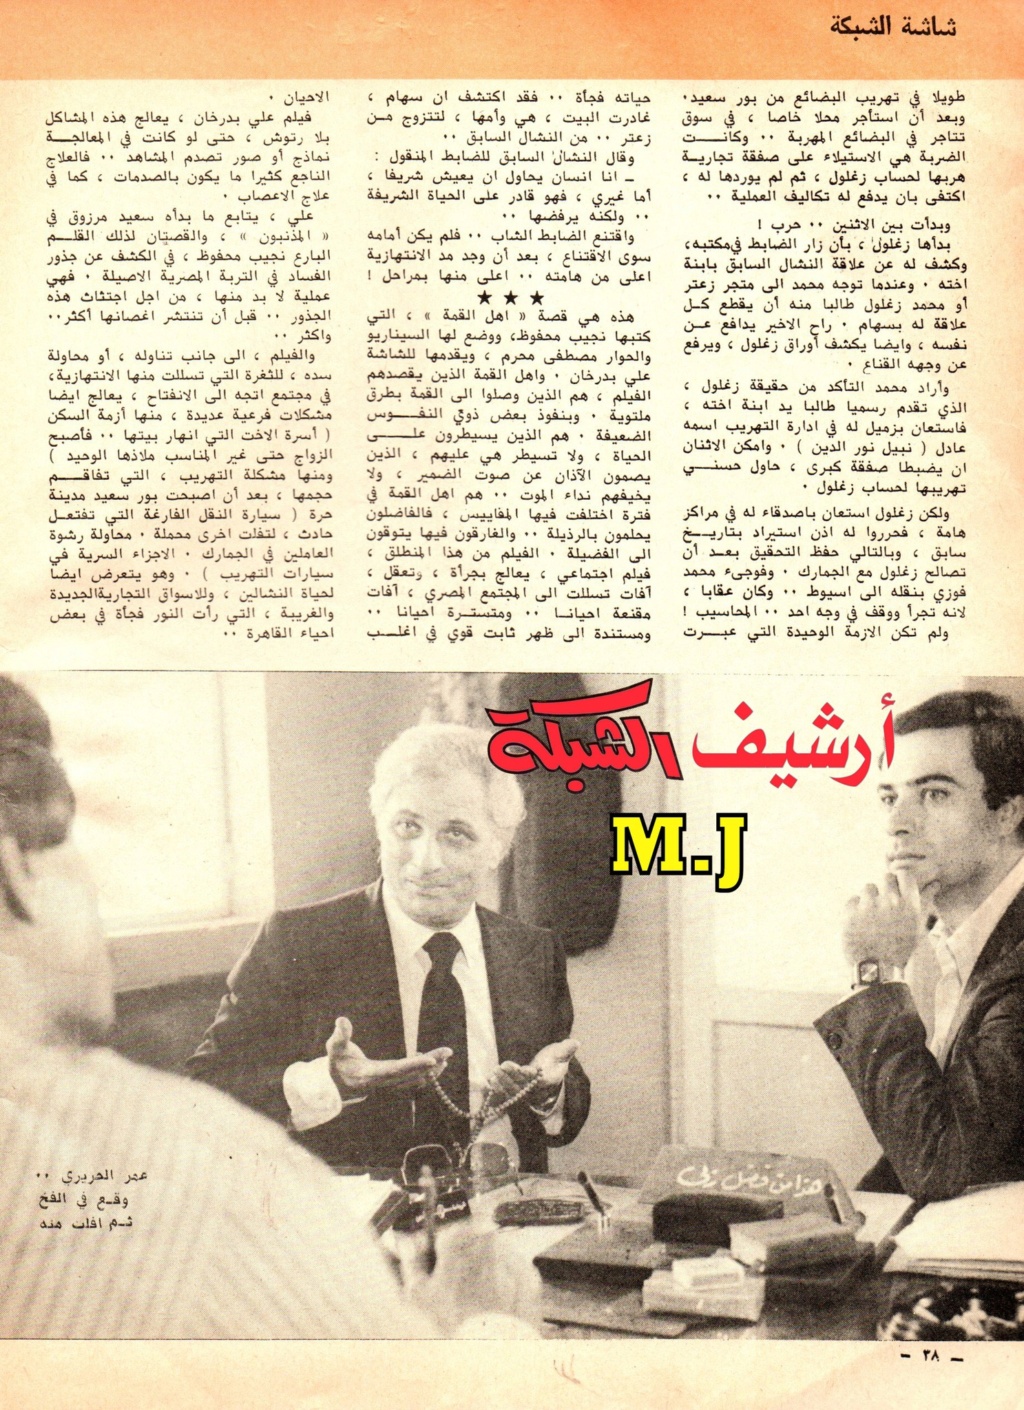 1981 - نقد صحفي : الصعود .. على سلم الحريق ! 1981 م 323